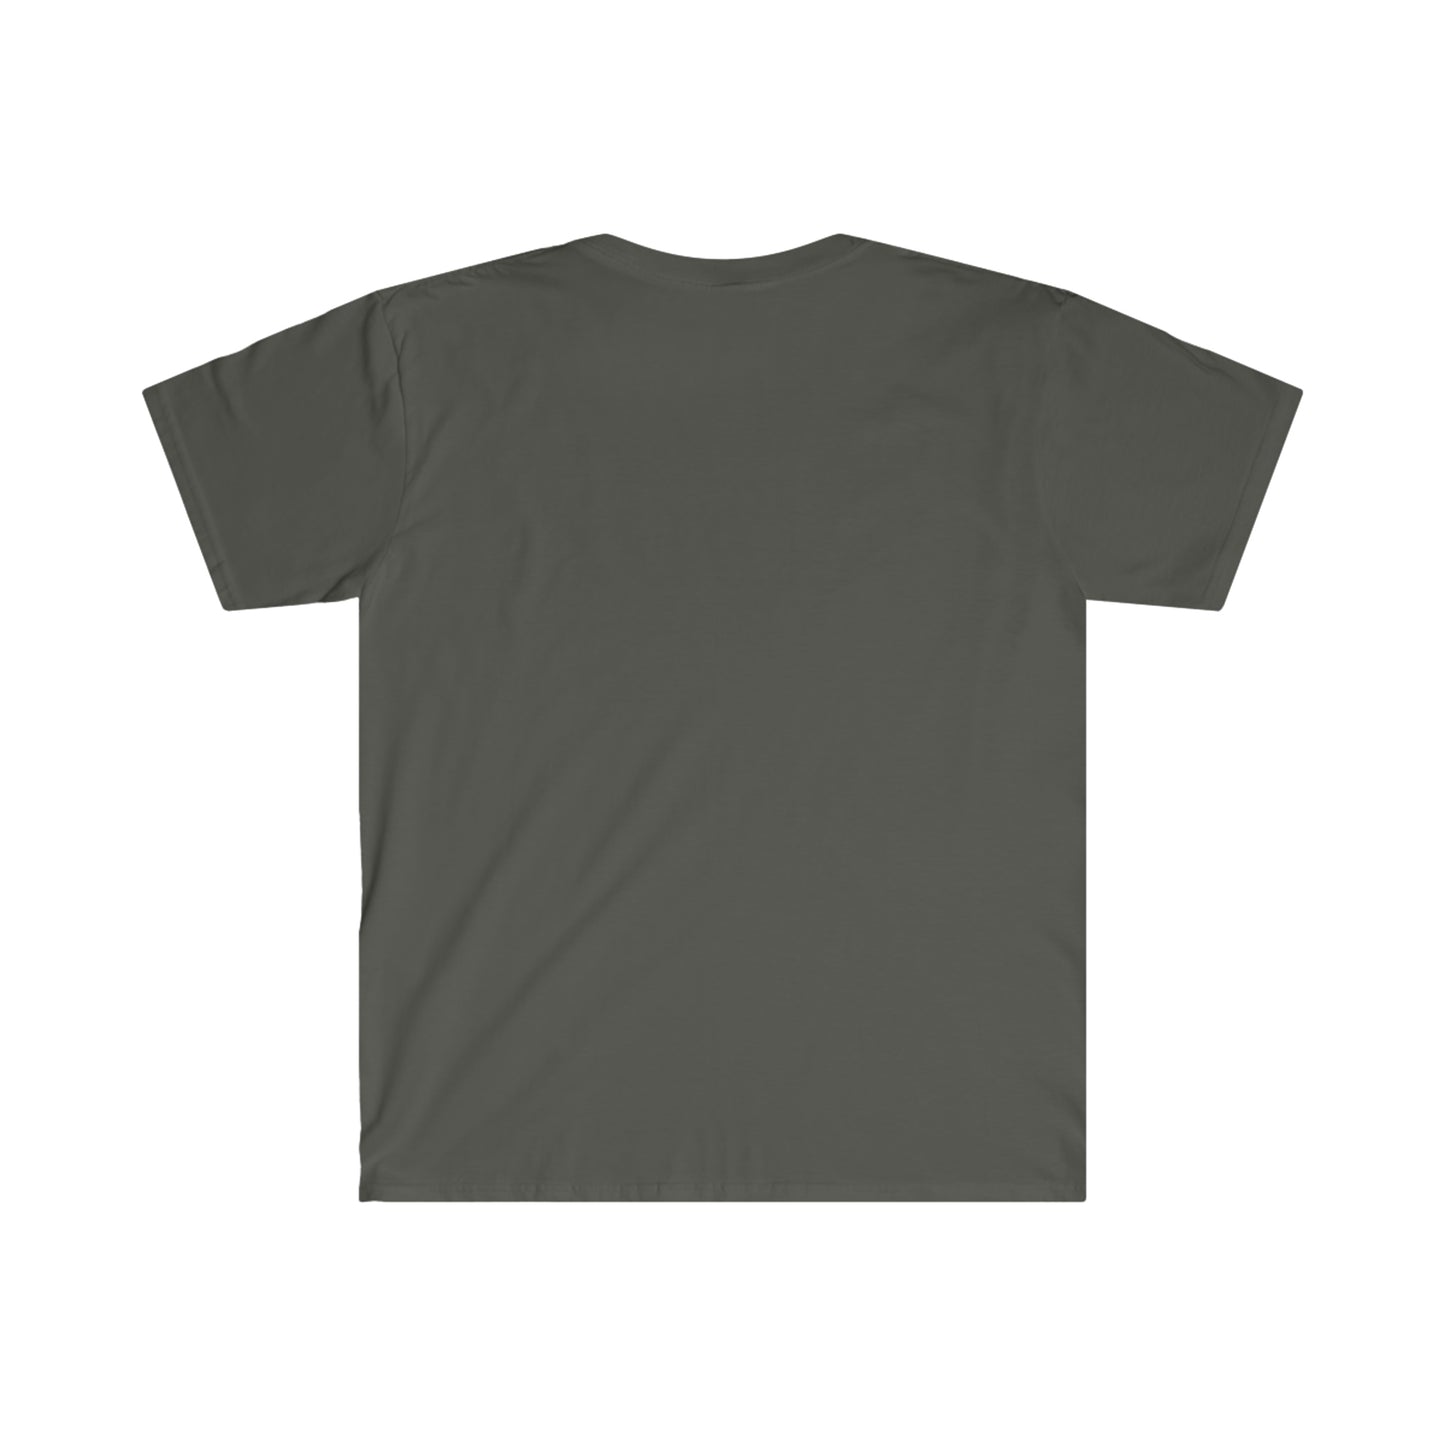 Tres Cuervos Bison Logo T-Shirt